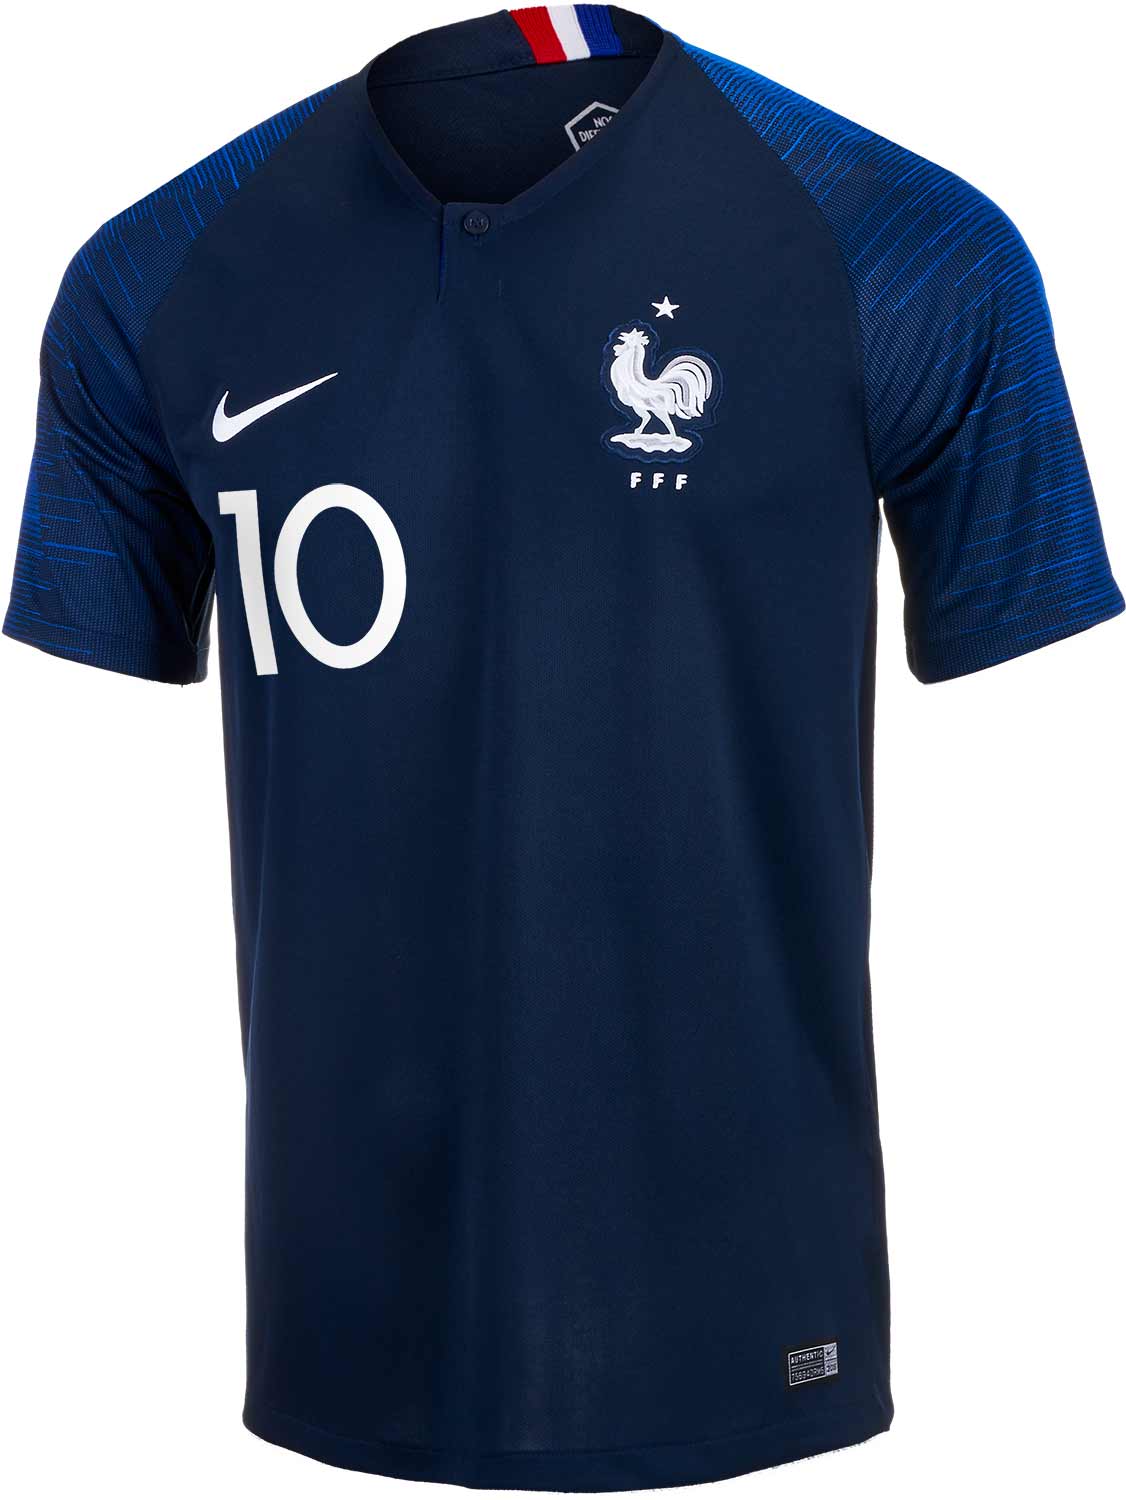 rand afbreken Scheermes 2018/19 Nike Kylian Mbappe France Home Jersey - SoccerPro